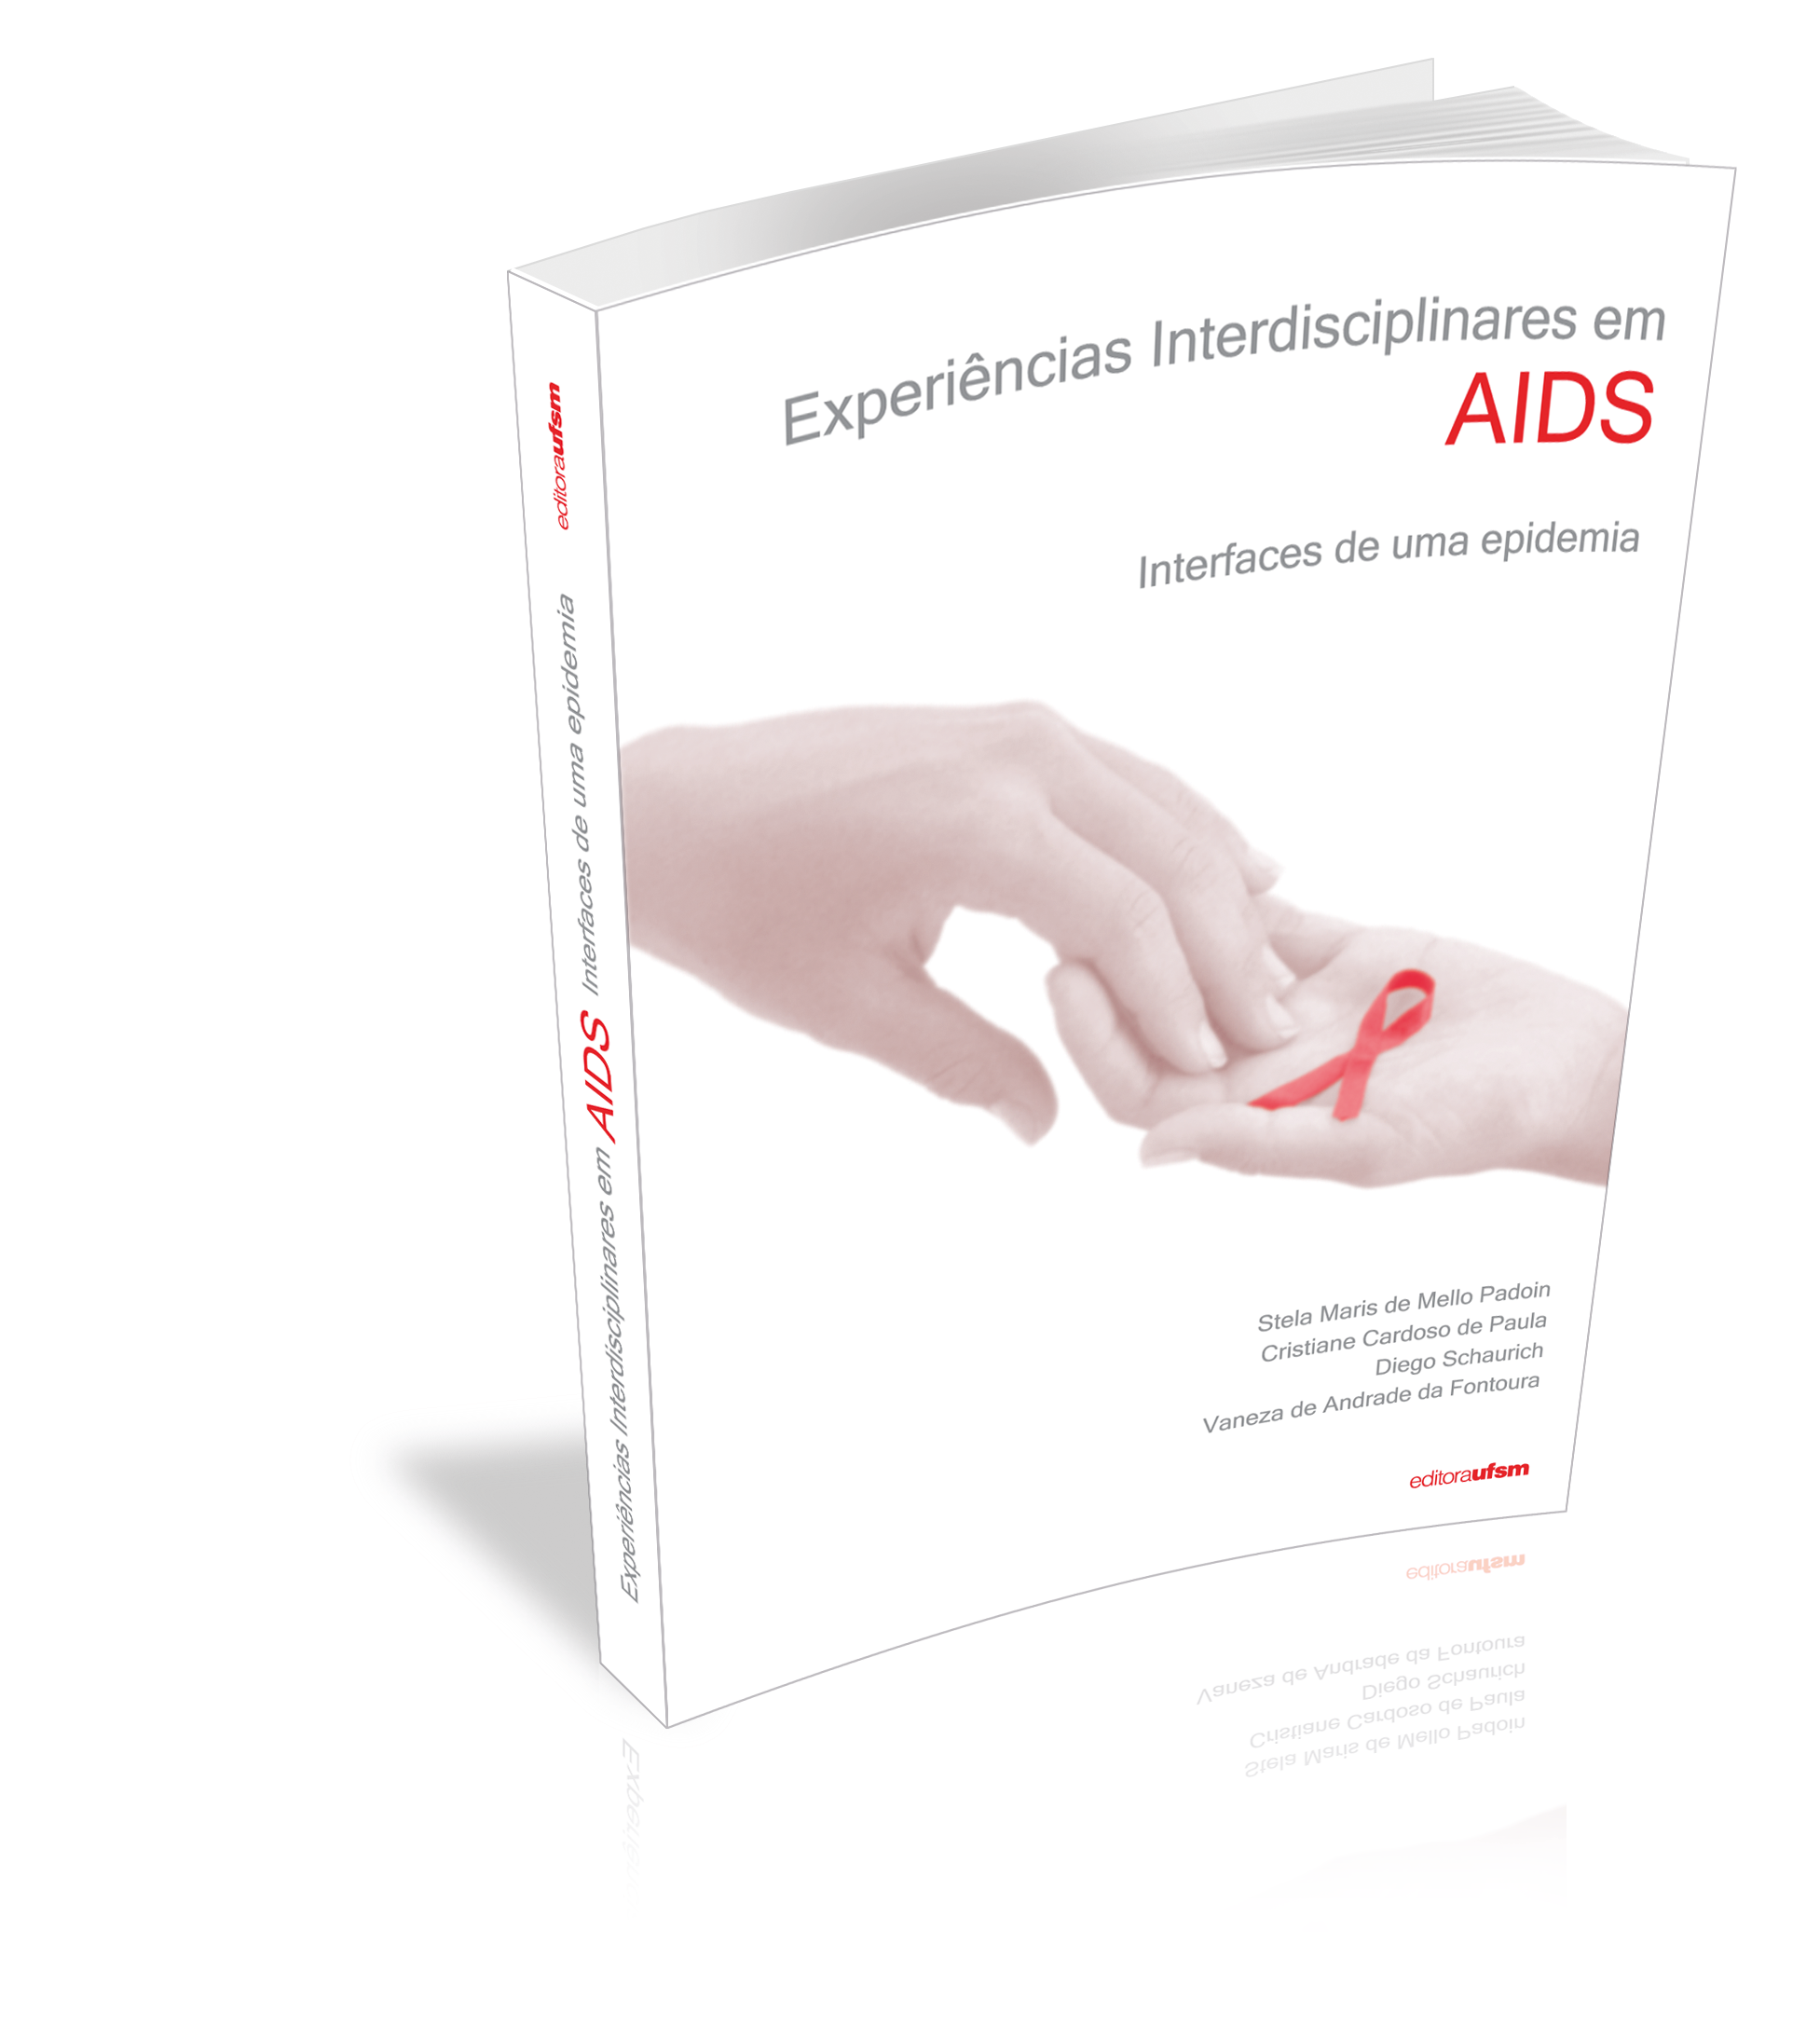 Capa do livro Experiências Interdisciplinares em AIDS